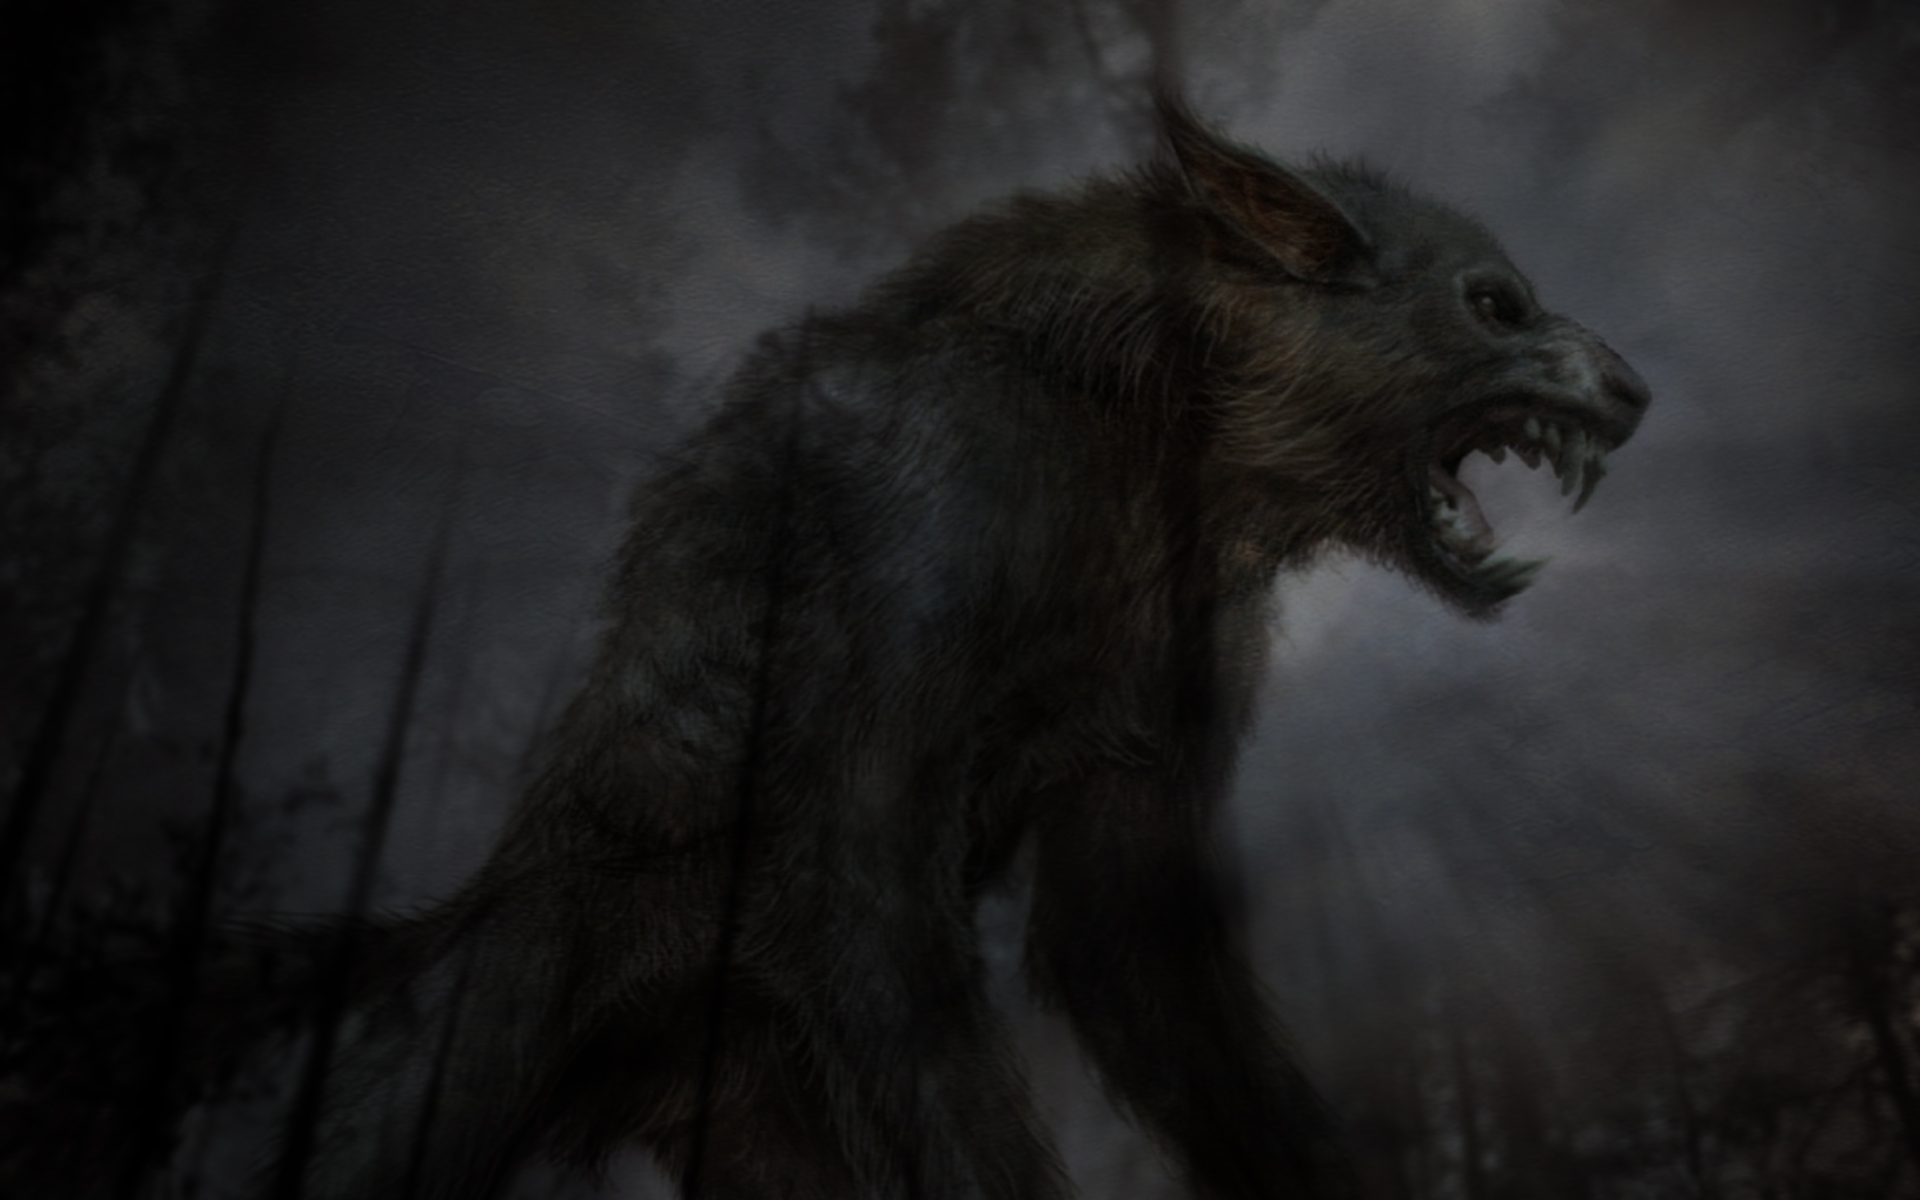 dark, creatures, werewolves - desktop wallpaper